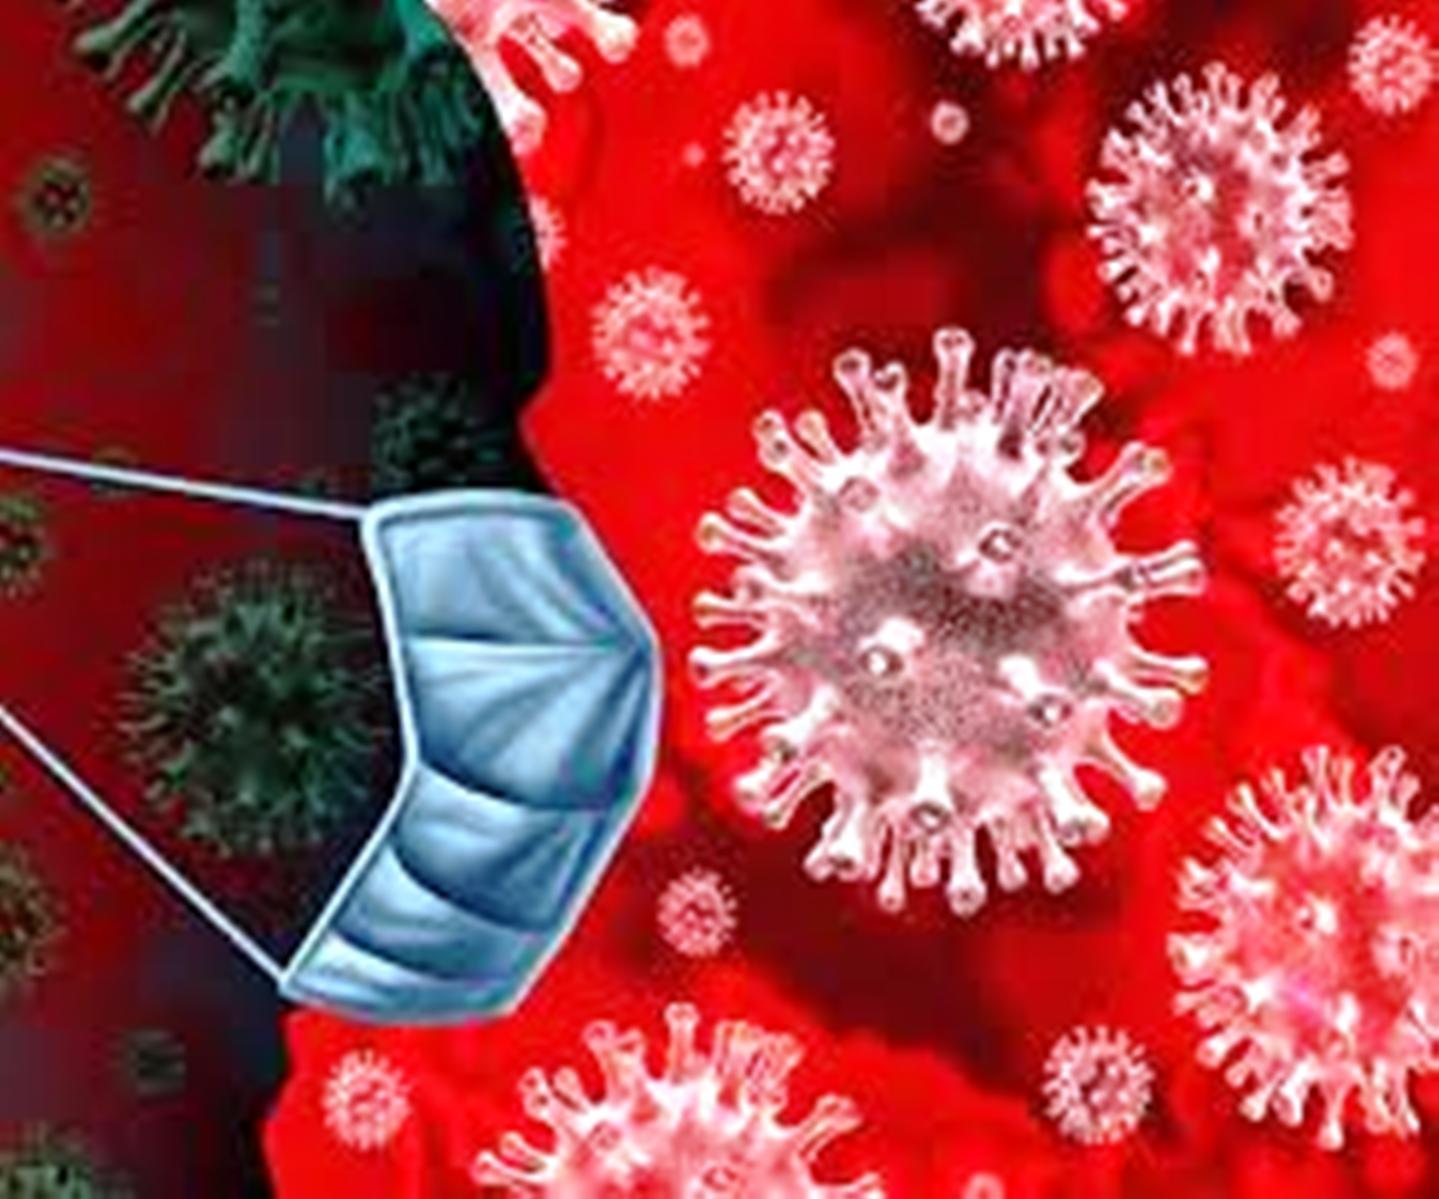 कोरोना वायरस को लेकर डाॅक्टर वली का दावा, इस वजह से देश में कम है मौत का आंकड़ा